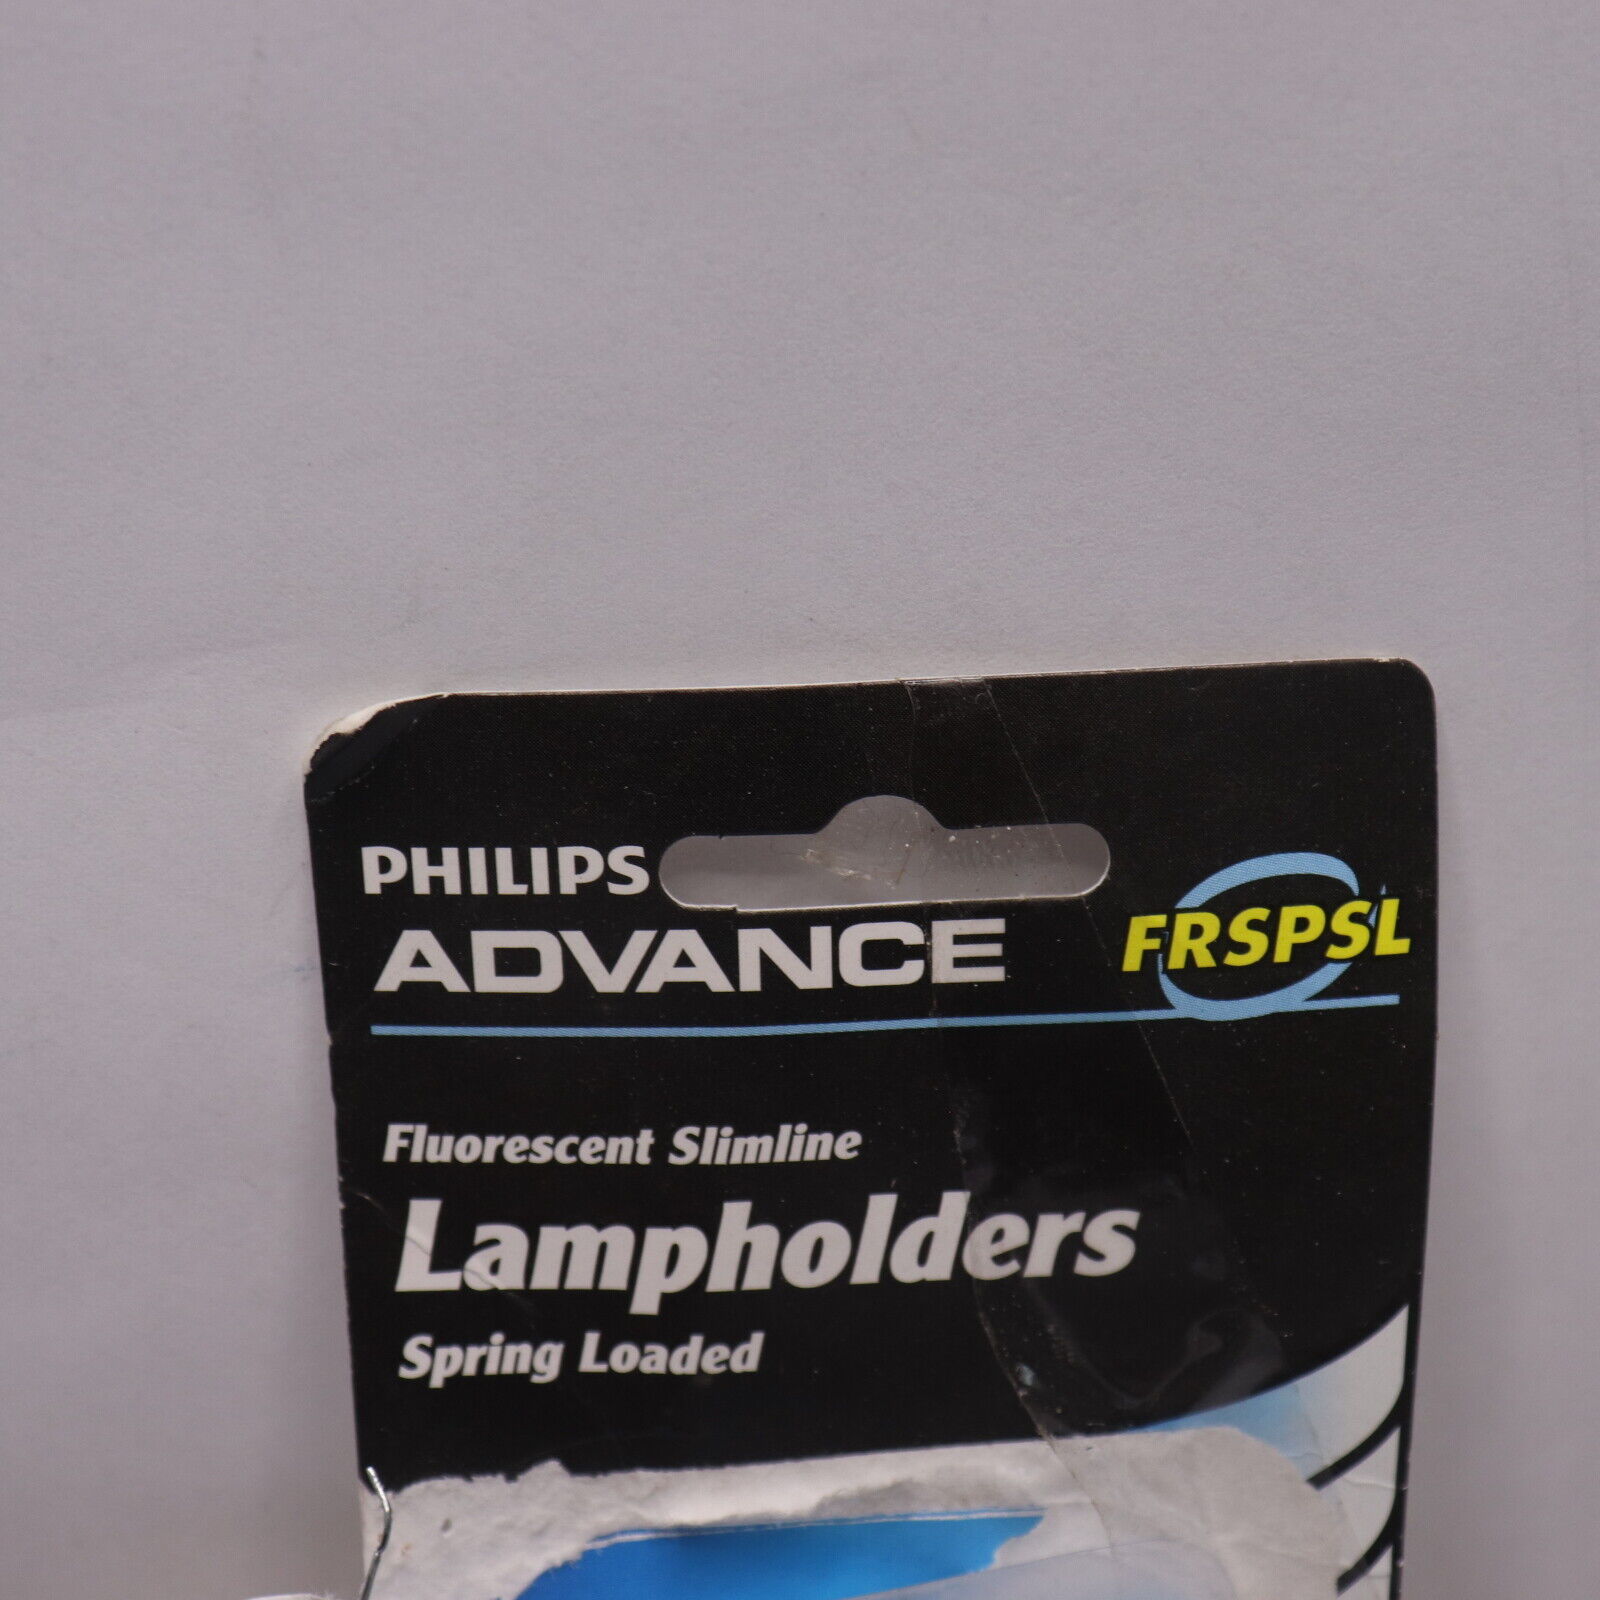 Philips Advance Fluorescent Slimline Spring Loaded Lamp Holders FRSPSL